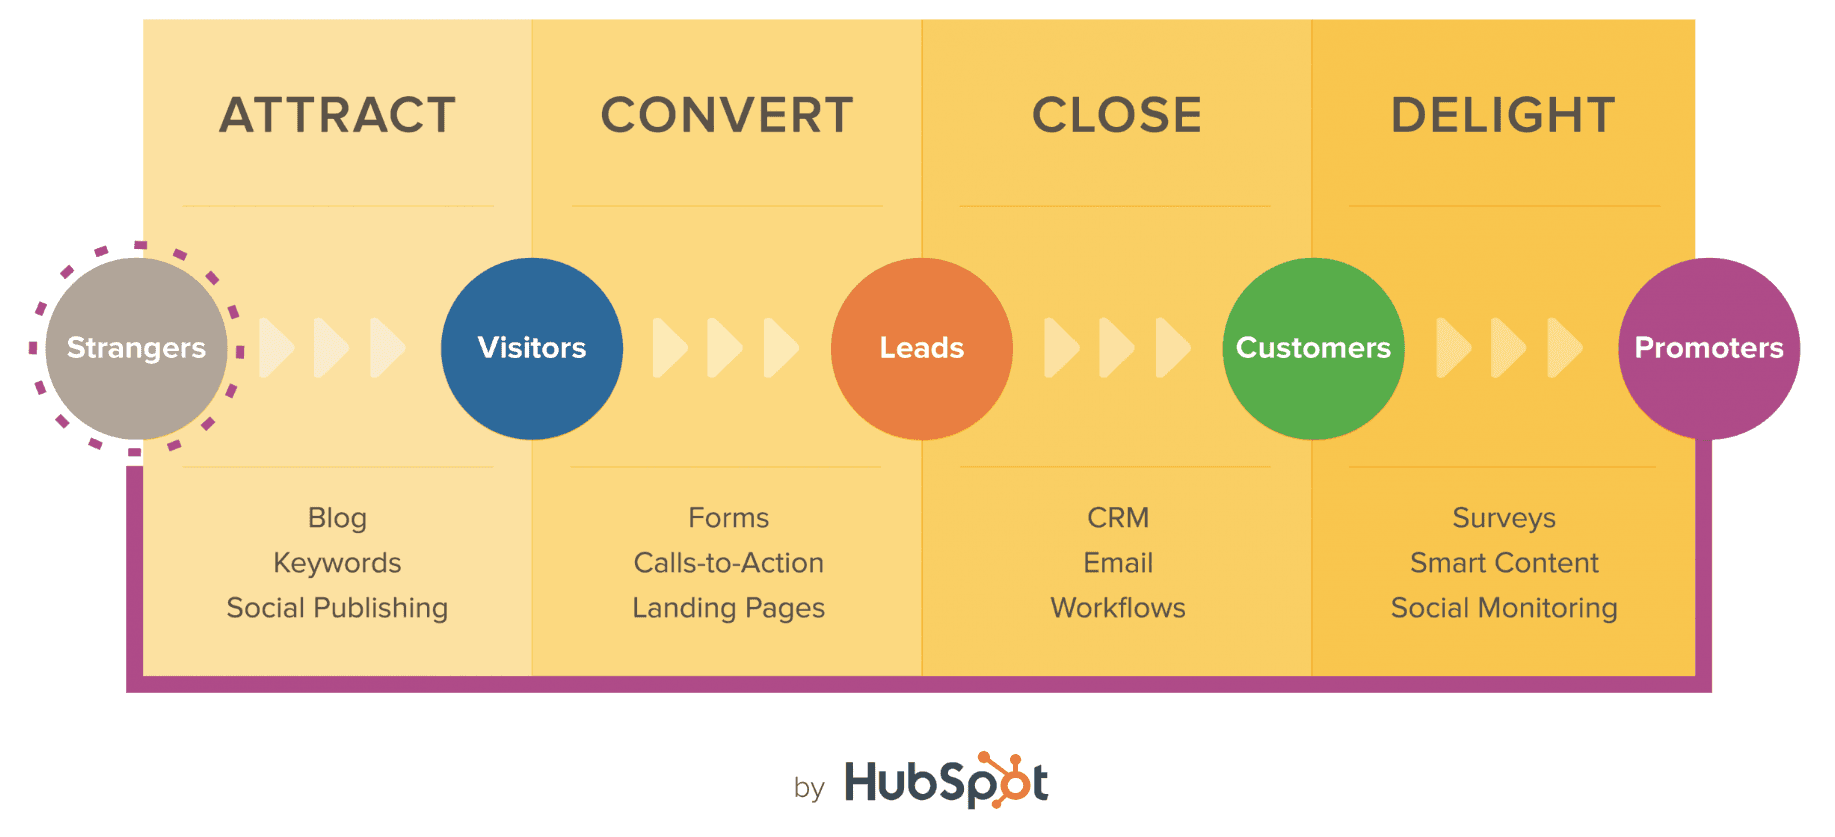 HubSpot Inbound Marketing Methodology